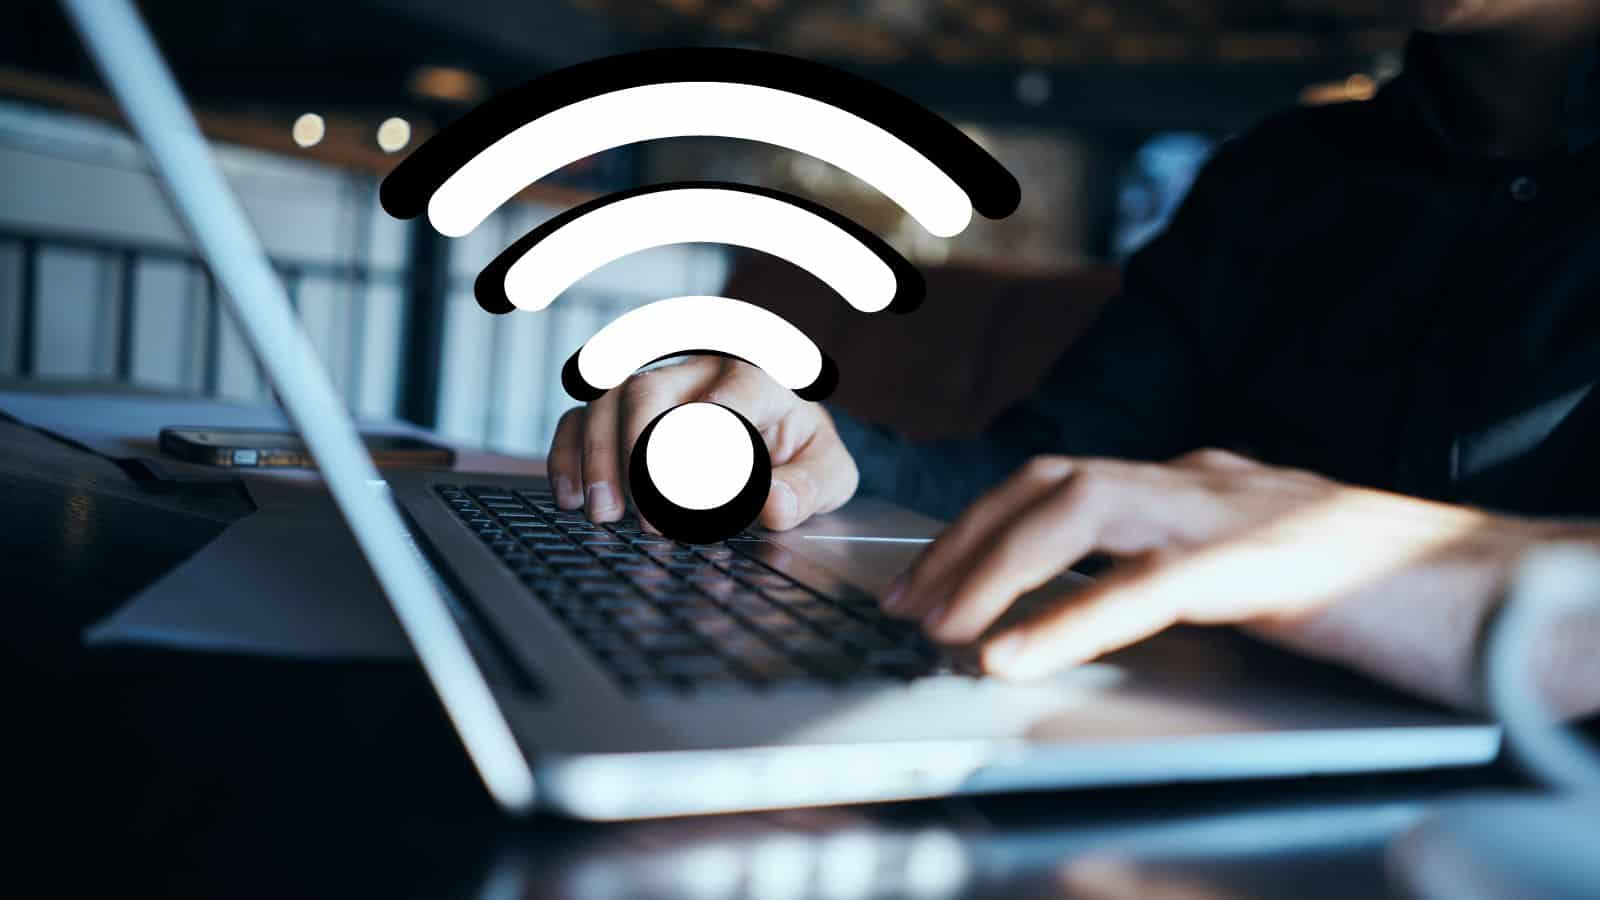 La rete Wi-Fi è migliore in ufficio? La risposta vi sorprenderà